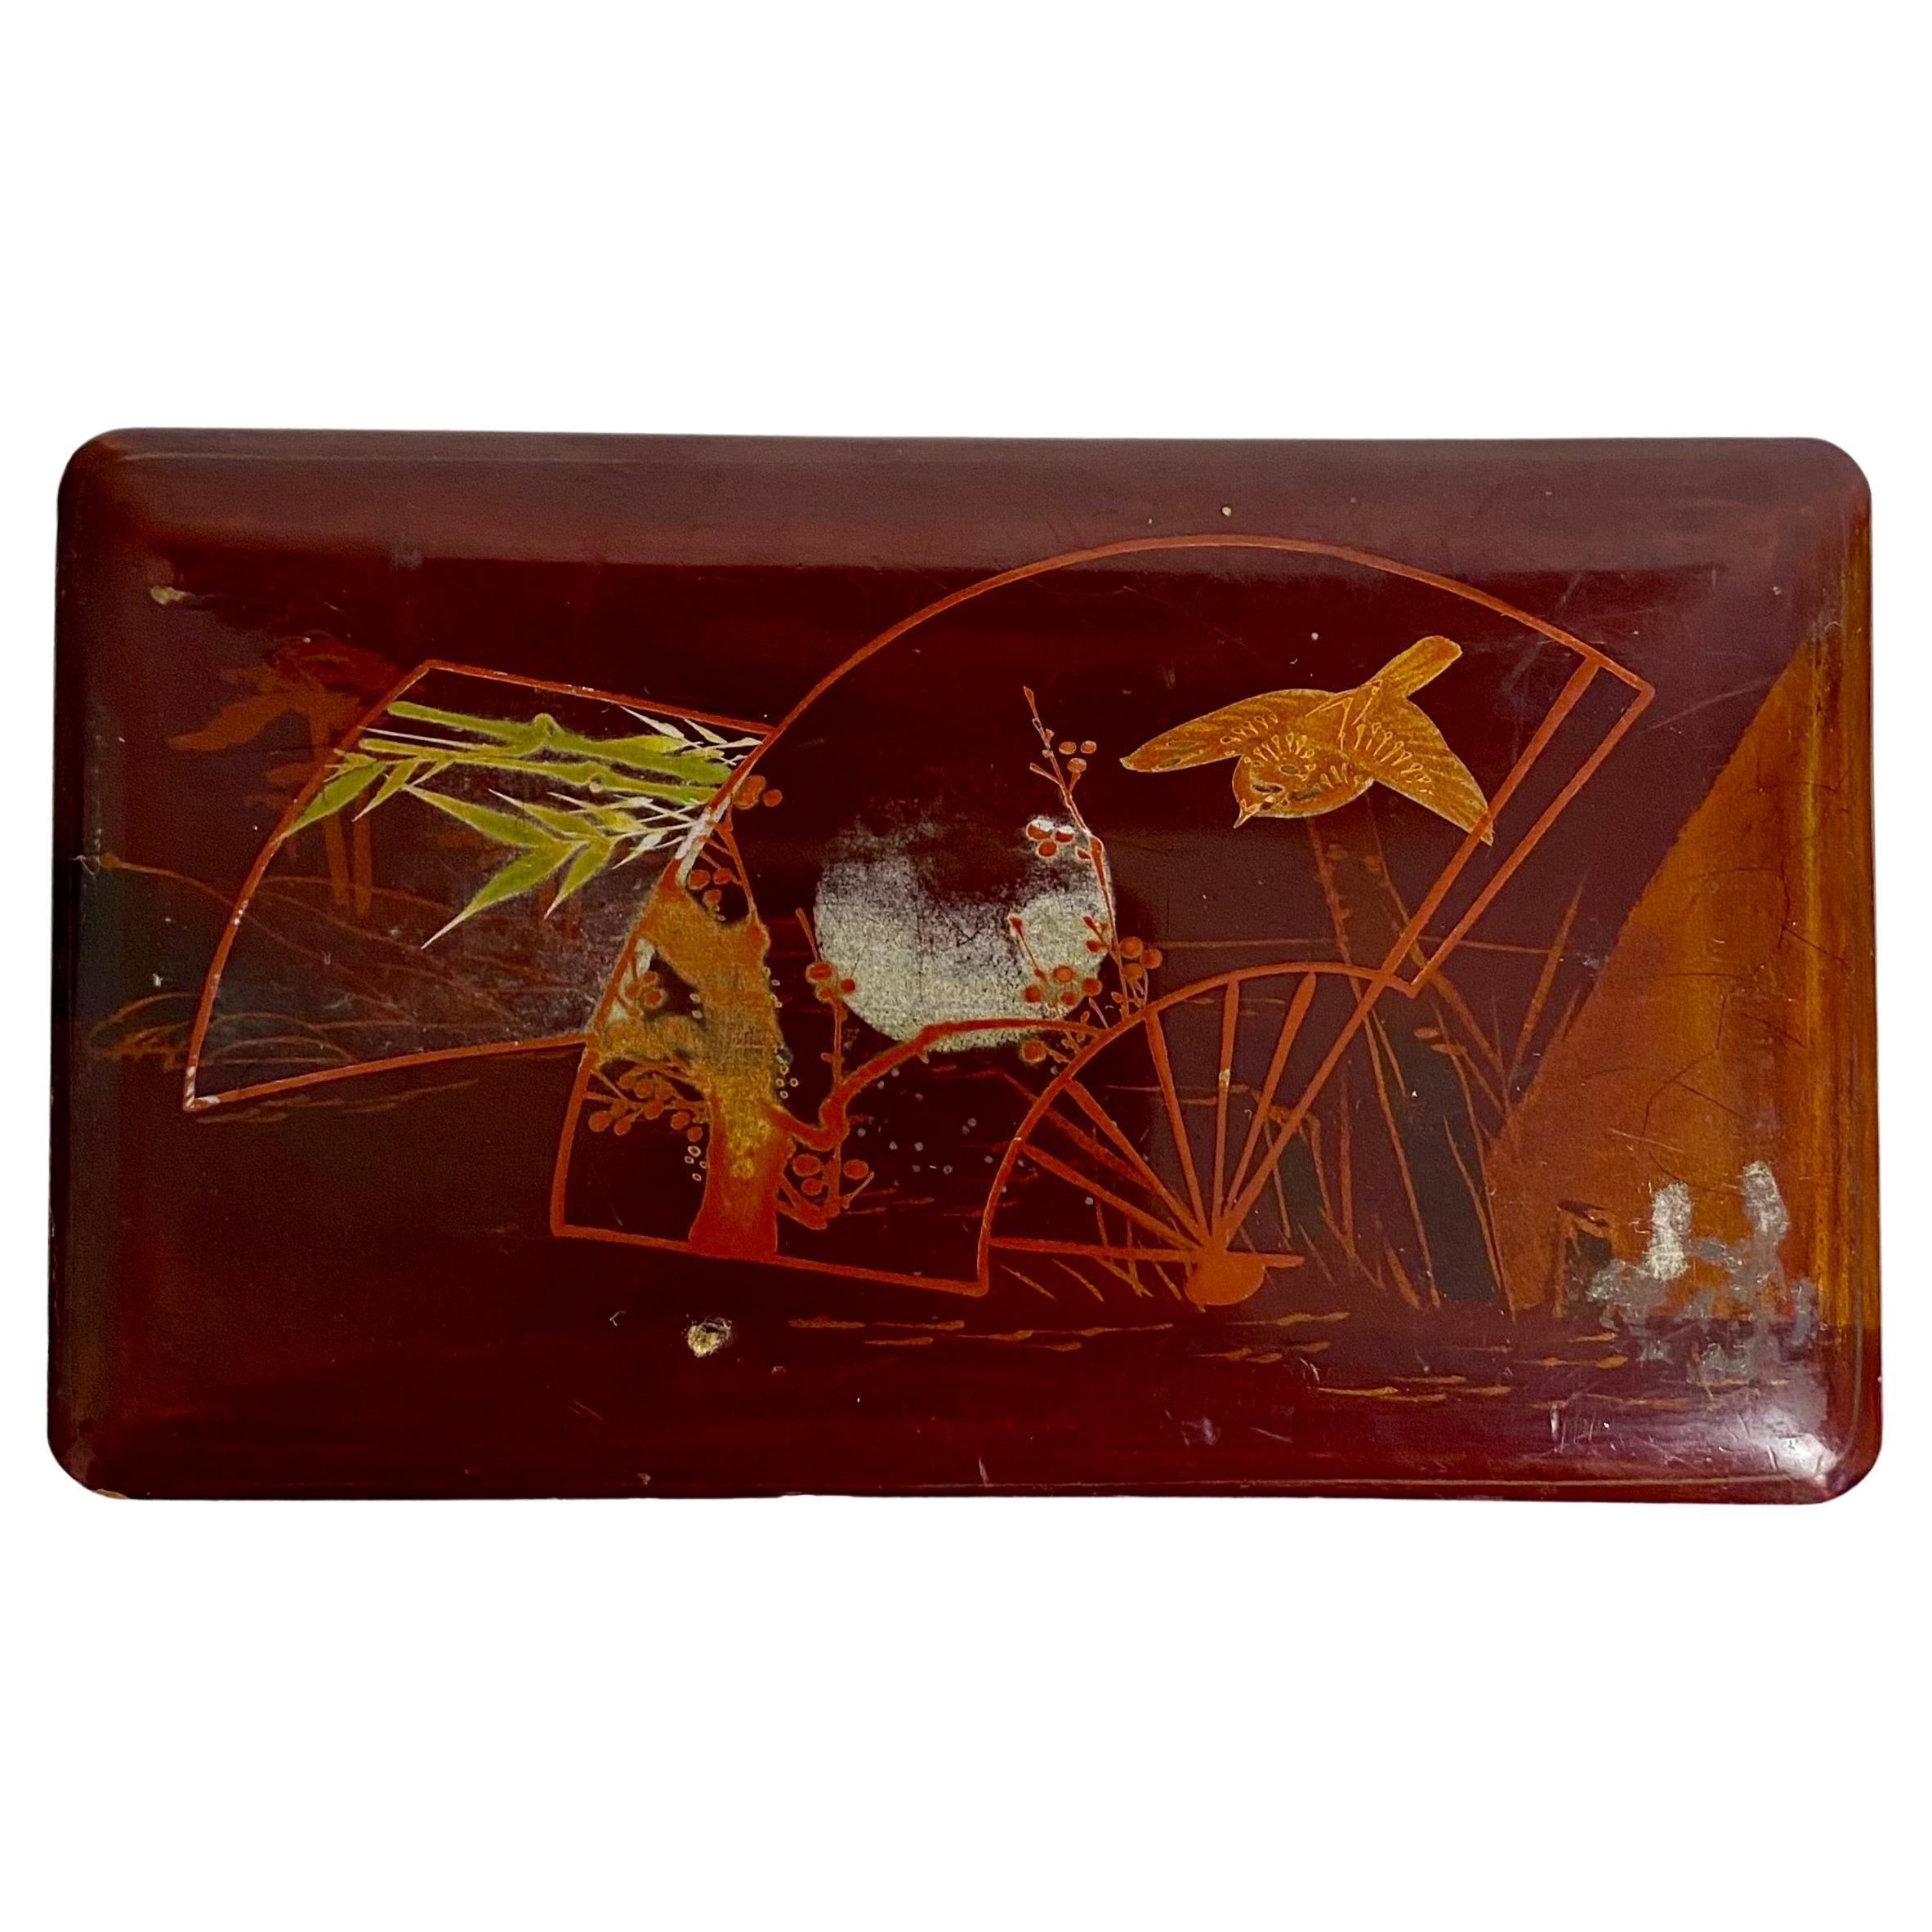 Belle boîte japonaise en bois laqué rouge ;
19ème siècle
Le couvercle est décoré d'un paysage avec un oiseau, des arbres et un soleil couchant. 
L'intérieur de la boîte est recouvert d'une peinture noire laquée.
Petit format
Japon Fin du 19e siècle.
